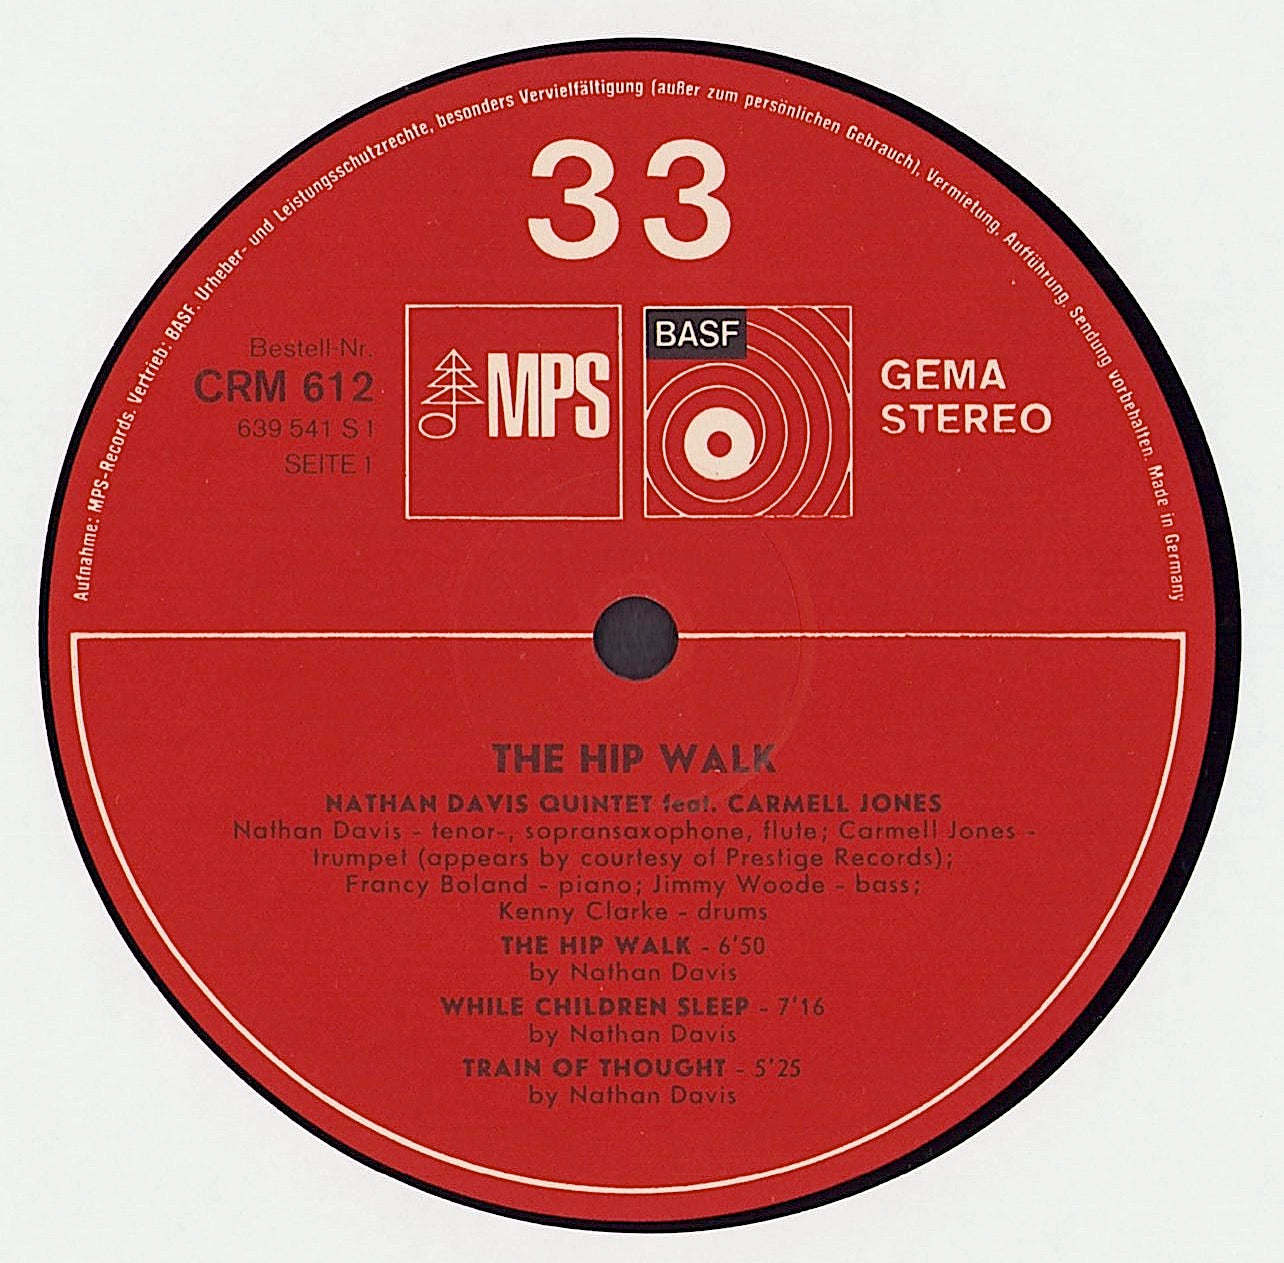 Nathan Davis Quintet Featuring Carmell Jones ‎- The Hip Walk Vinyl LP